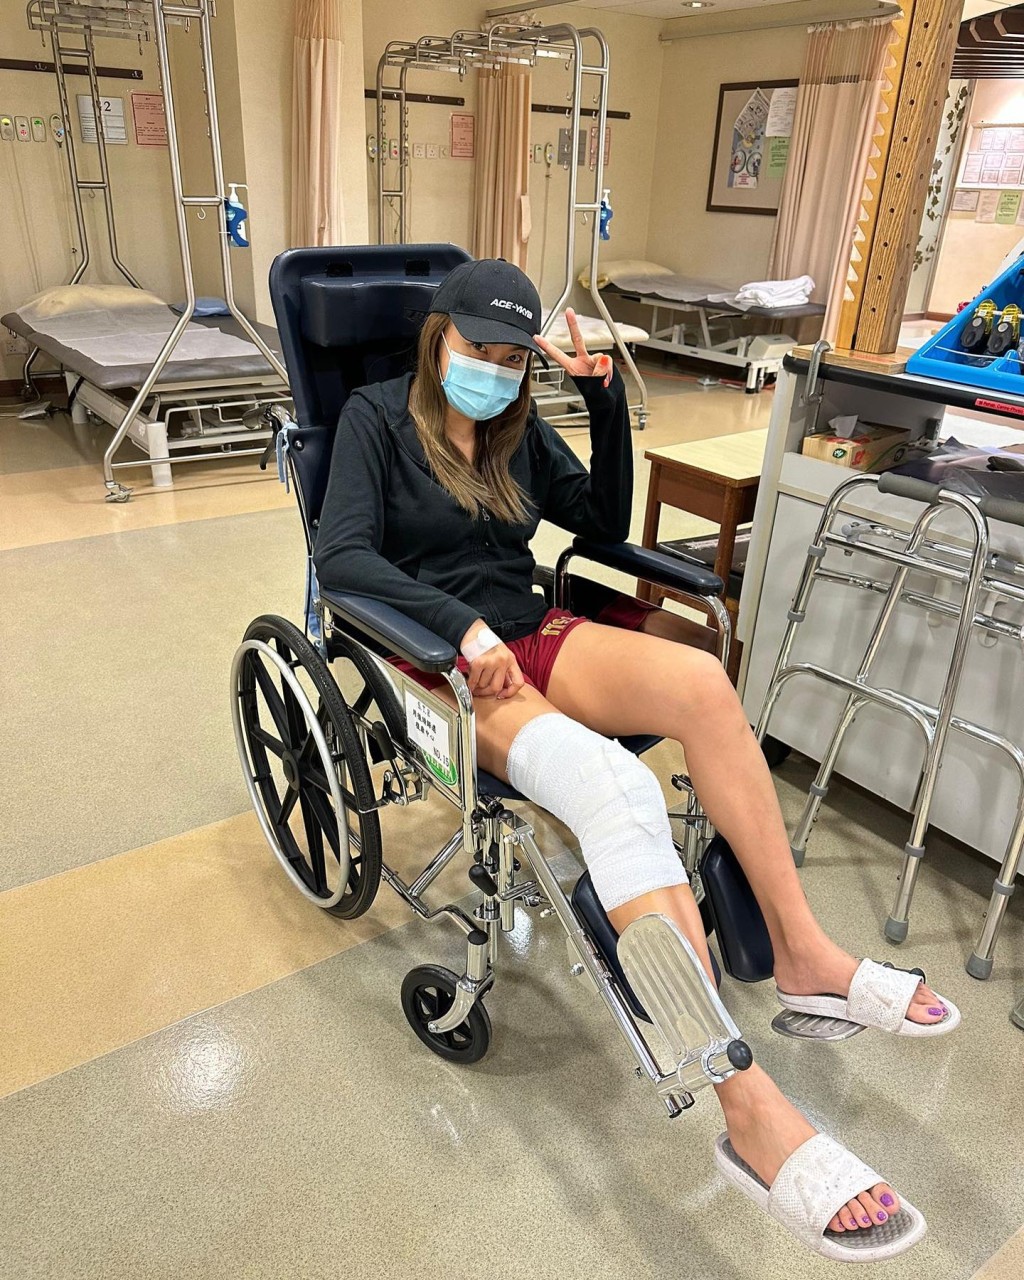 羅苡之去年8月初因膝蓋受傷入院。